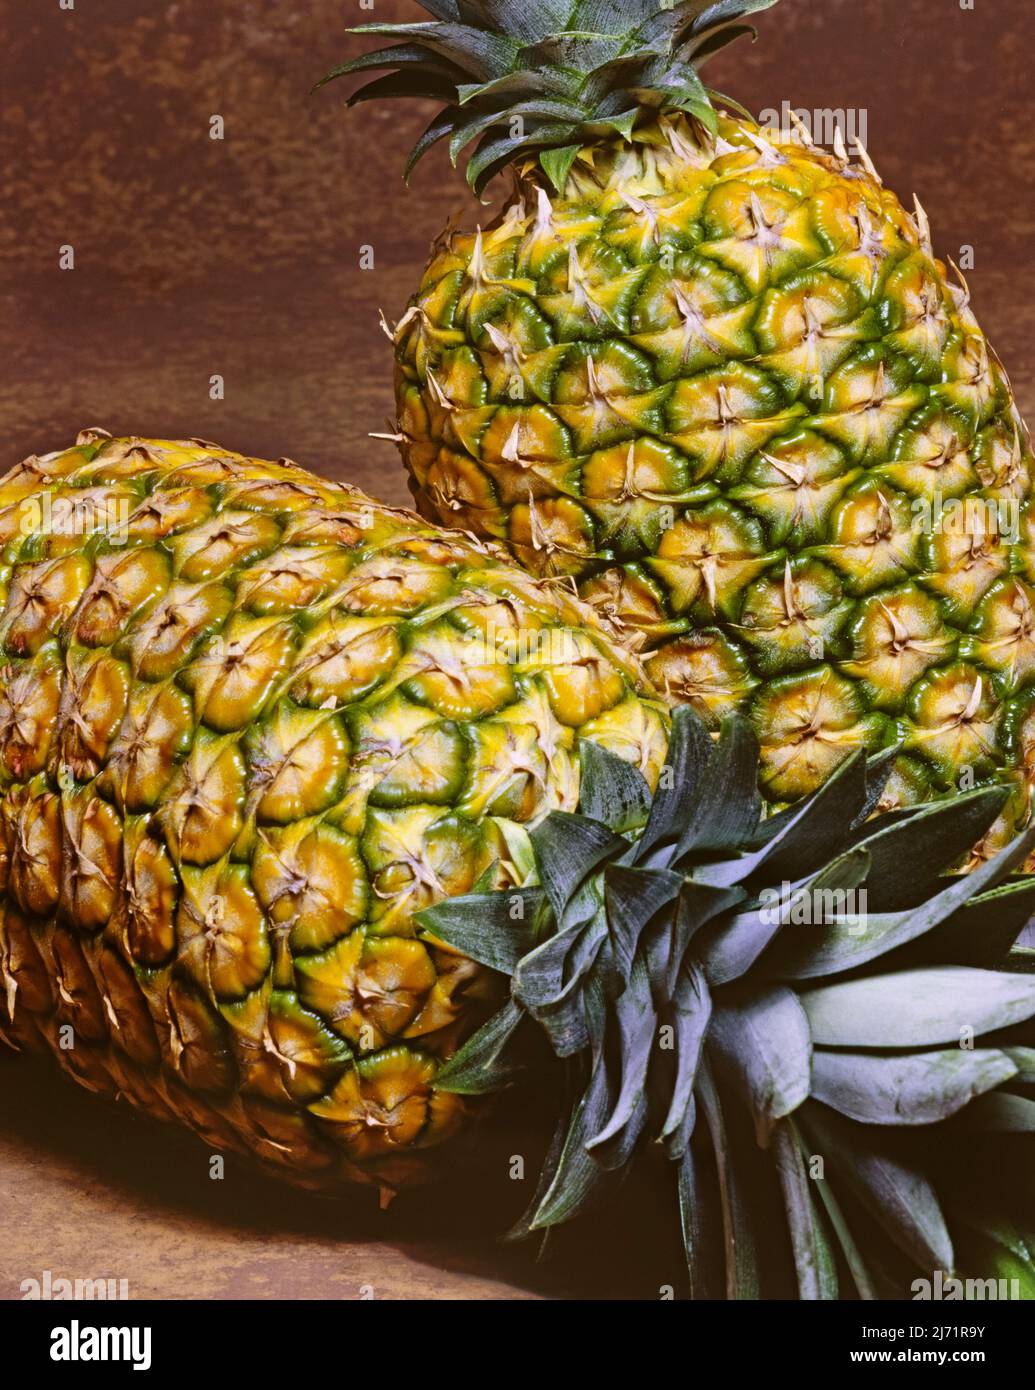 Due ananas maturi su sfondo marrone. Immagine da lucidi da 4x5 pollici. Foto Stock